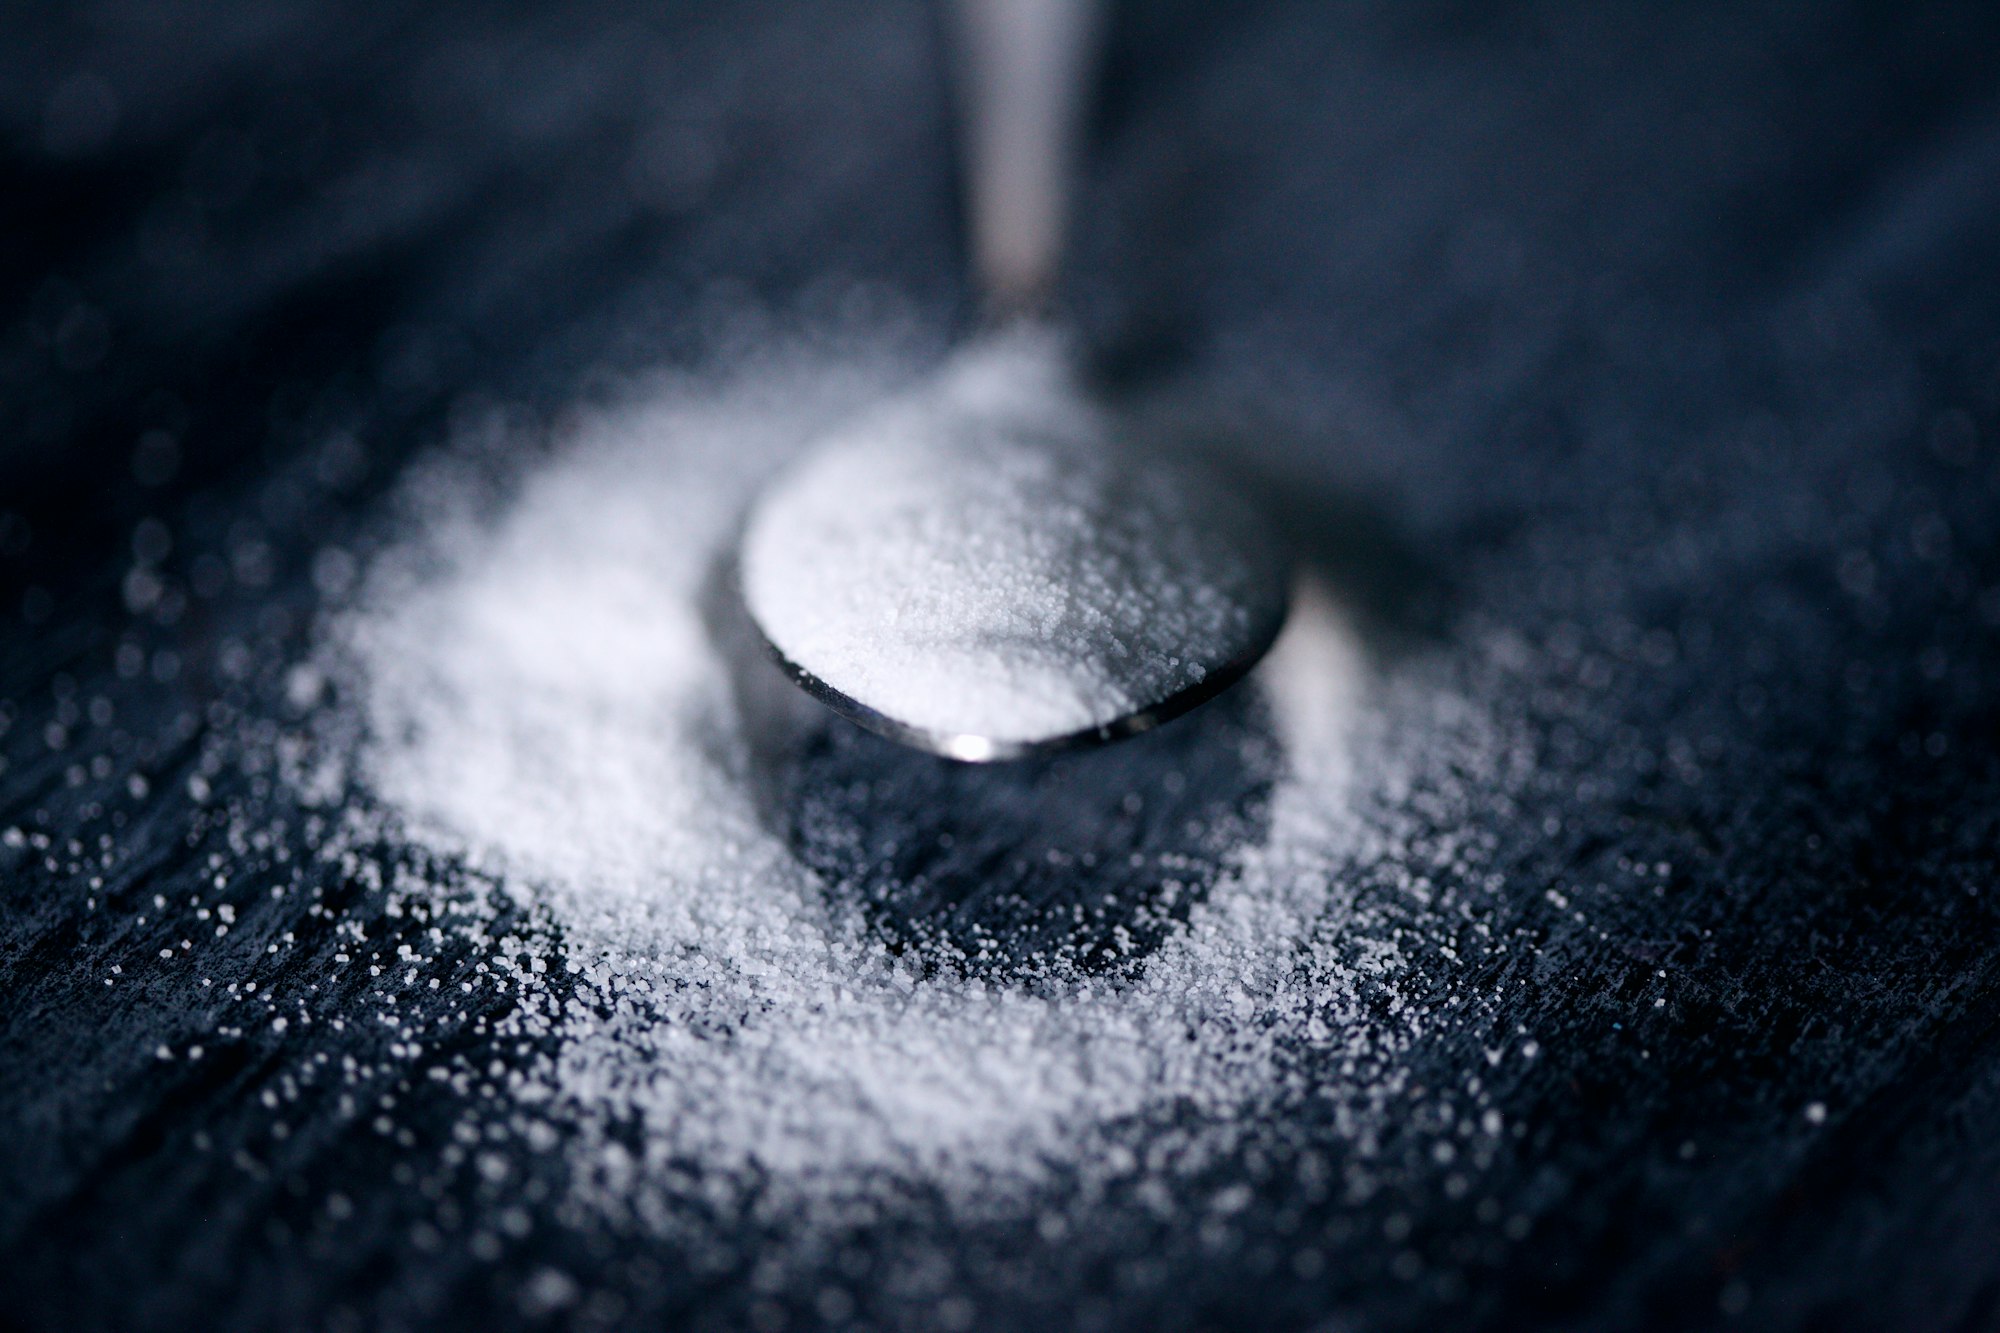 น้ำตาลเทียม สารทดแทนความหวาน ส่งผลต่อจุลินทรีย์ในลำไส้รึเปล่า ?